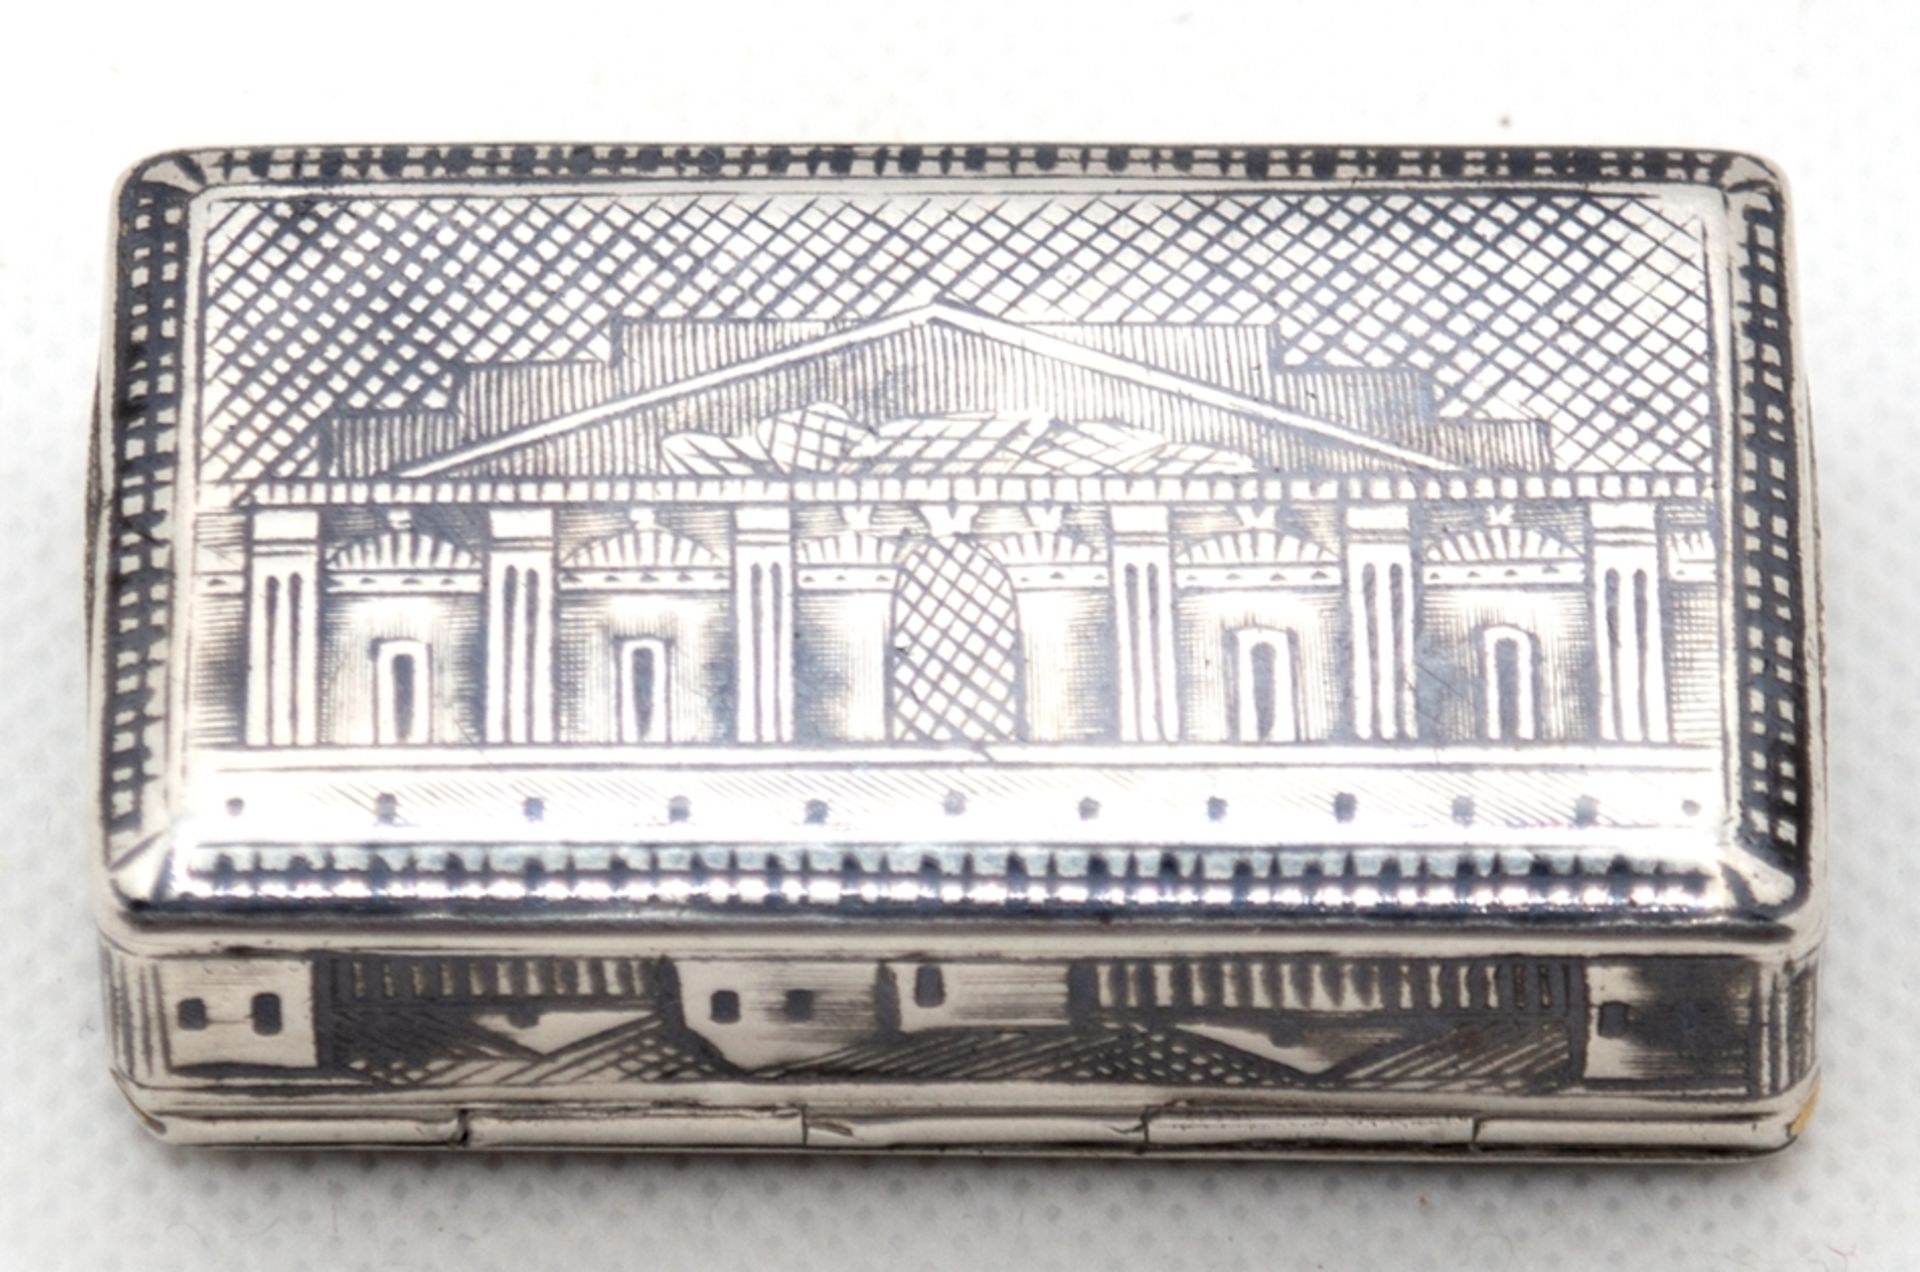 Dose, Moskau 1870, 84 Zol. Silber, allseitig architektonischer Niellodekor, 41 g, 1,7x5,4x3 cm - Bild 2 aus 2